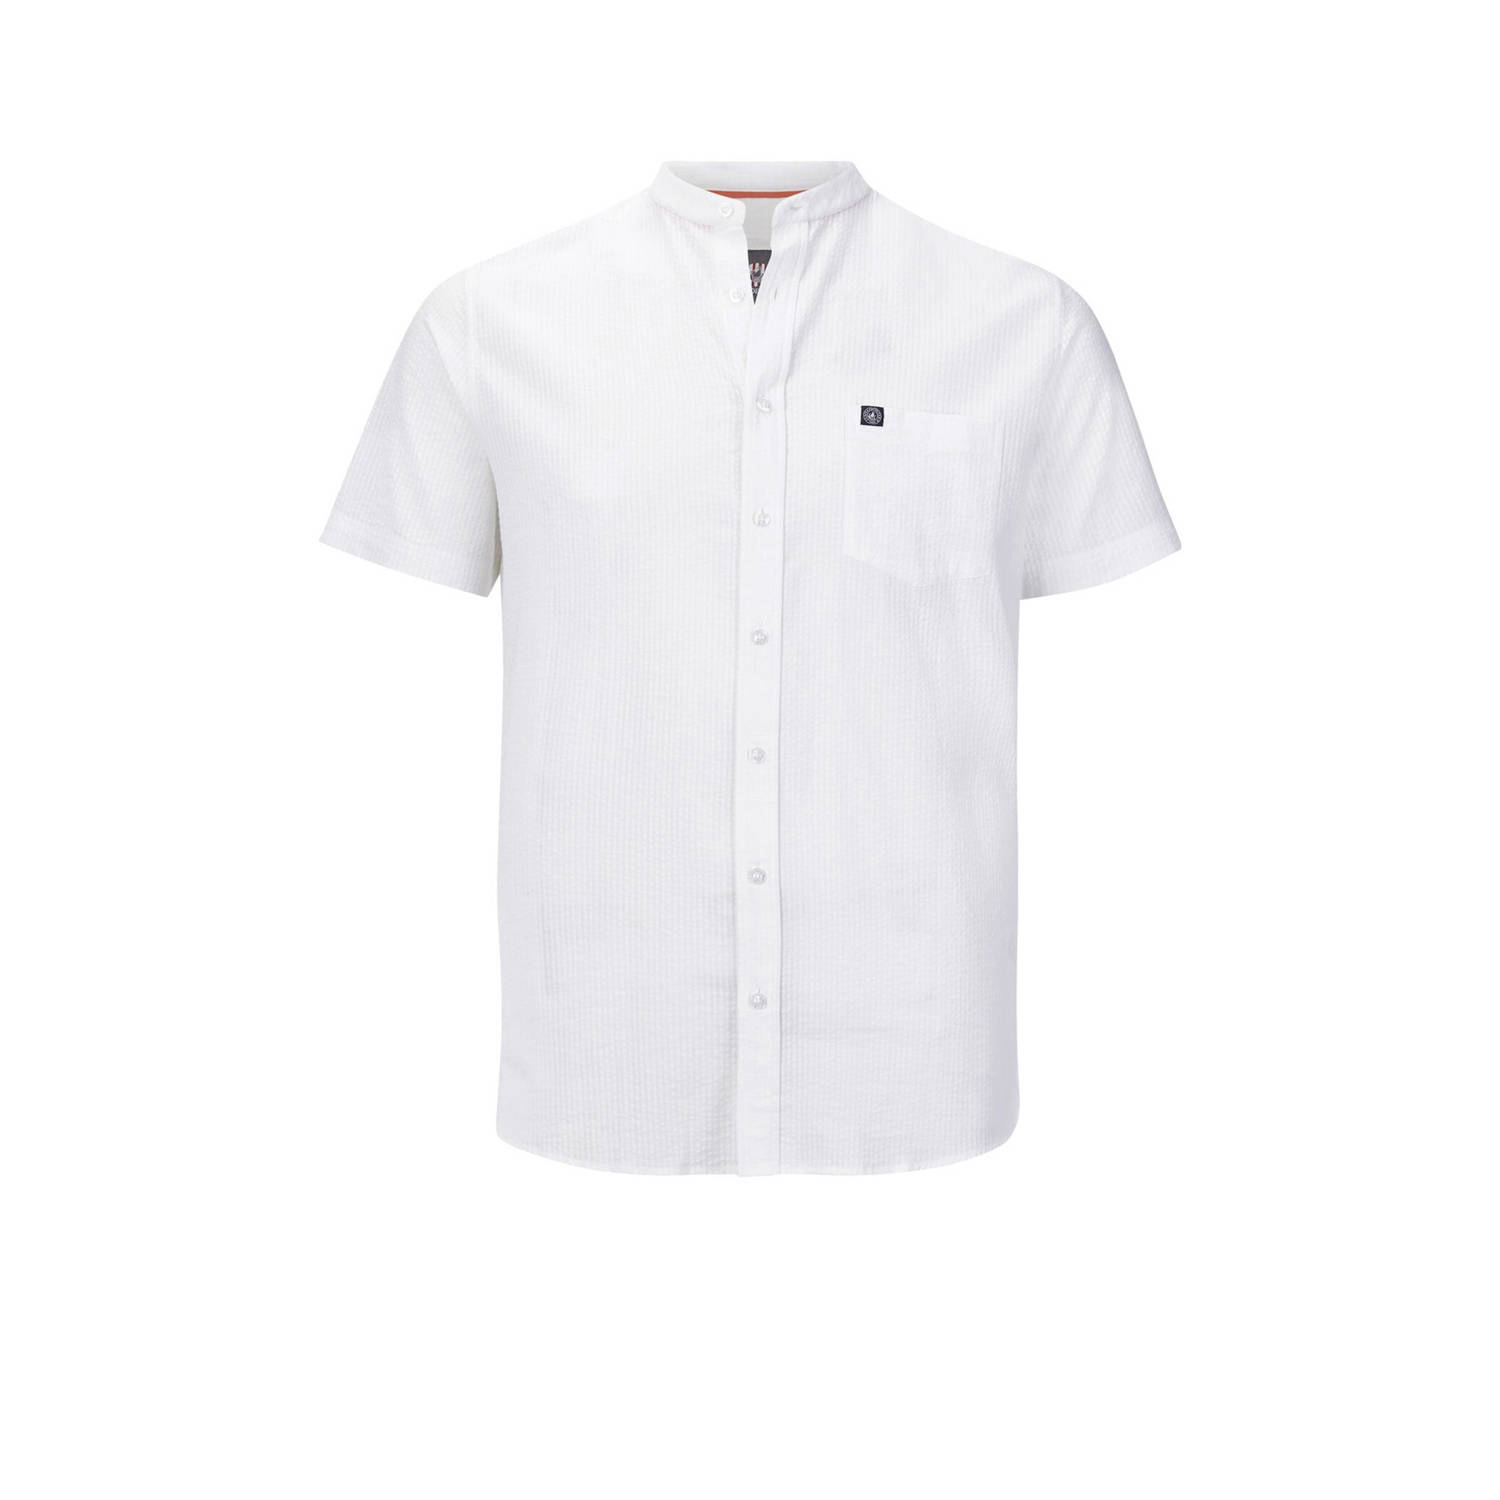 Jan Vanderstorm +FIT Collectie loose fit overhemd ALBART Plus Size met logo wit